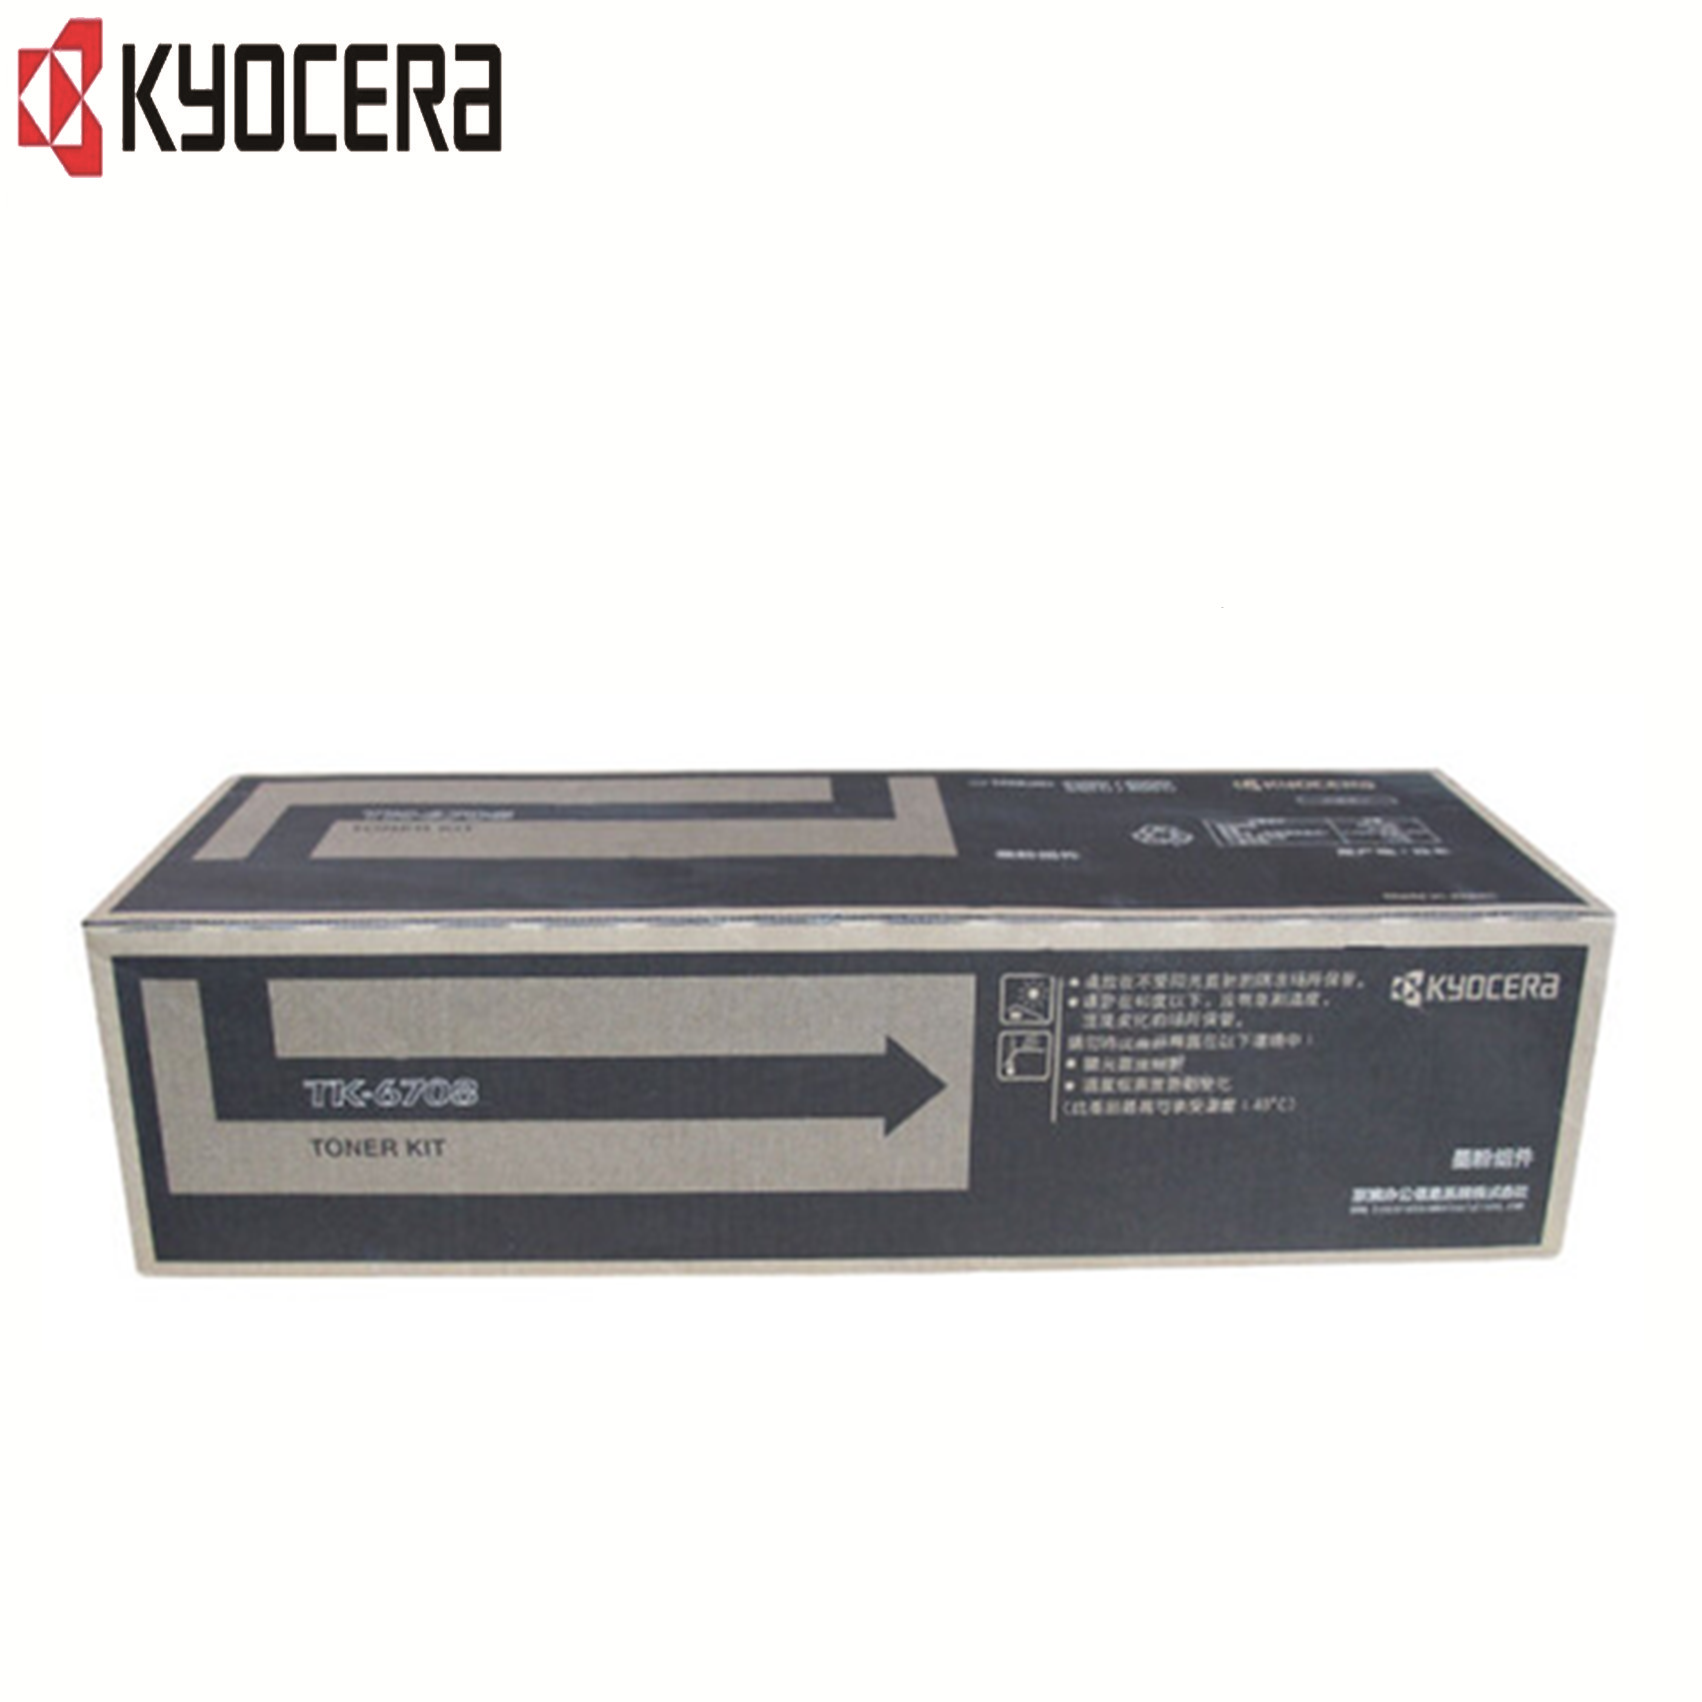 京瓷(KYOCERA)TK-6708粉盒 (京瓷6501/8001/8000/6500) hs